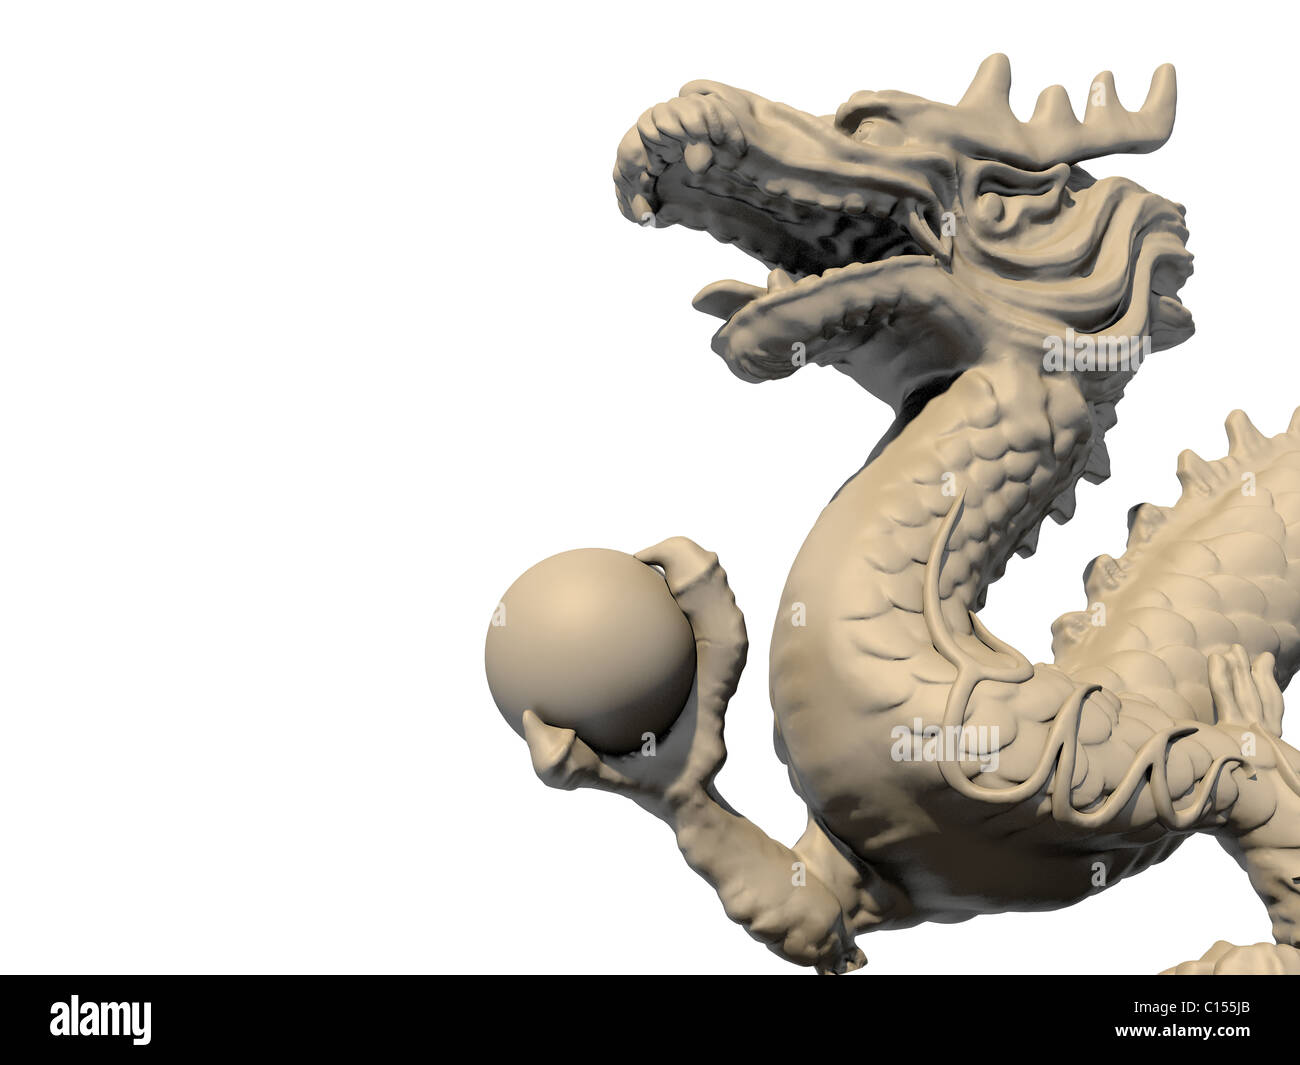 Cinese bianca statua del drago tenendo la palla con i suoi artigli, isolata contro uno sfondo bianco. Vista ravvicinata immagine 3D. Foto Stock